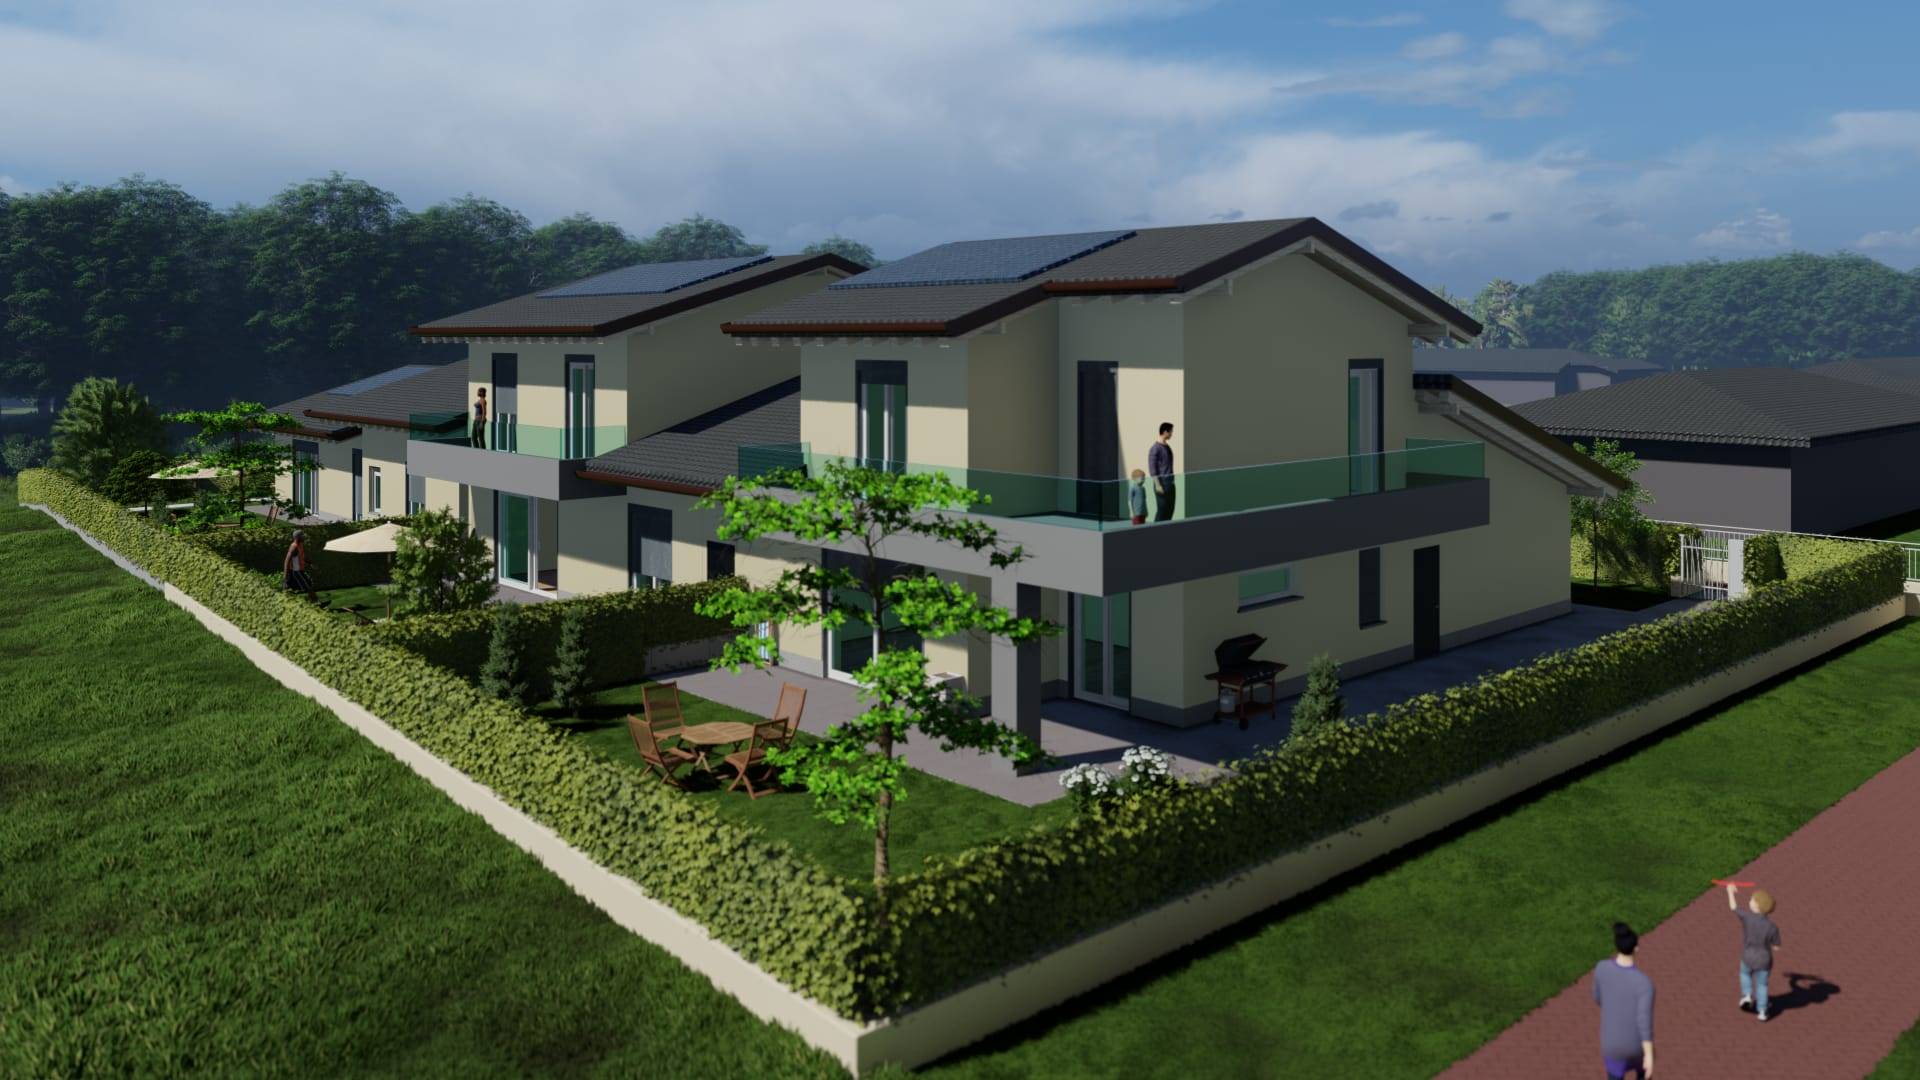 Villa Bifamiliare in vendita a Chignolo d'Isola, 4 locali, prezzo € 445.000 | PortaleAgenzieImmobiliari.it